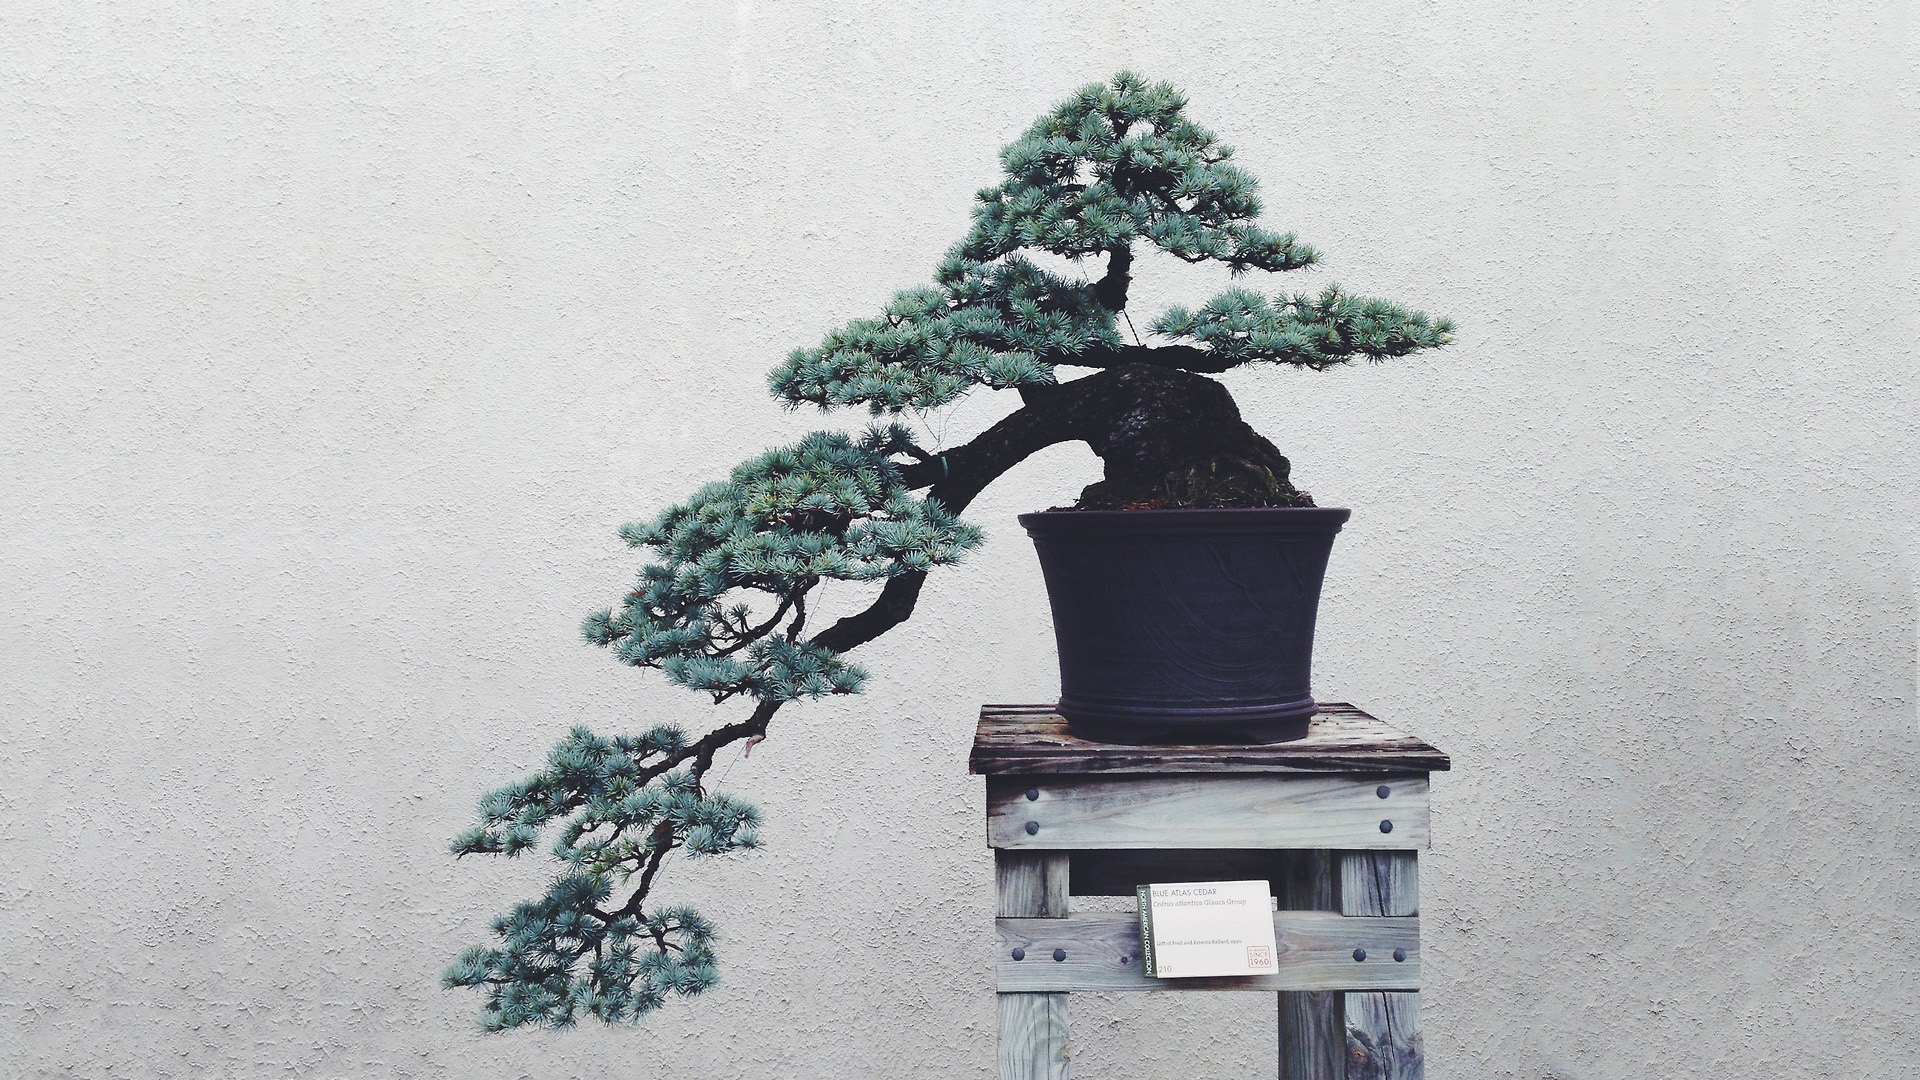 Bonsai HD Wallpaper | 1920x1080 | ID:41759